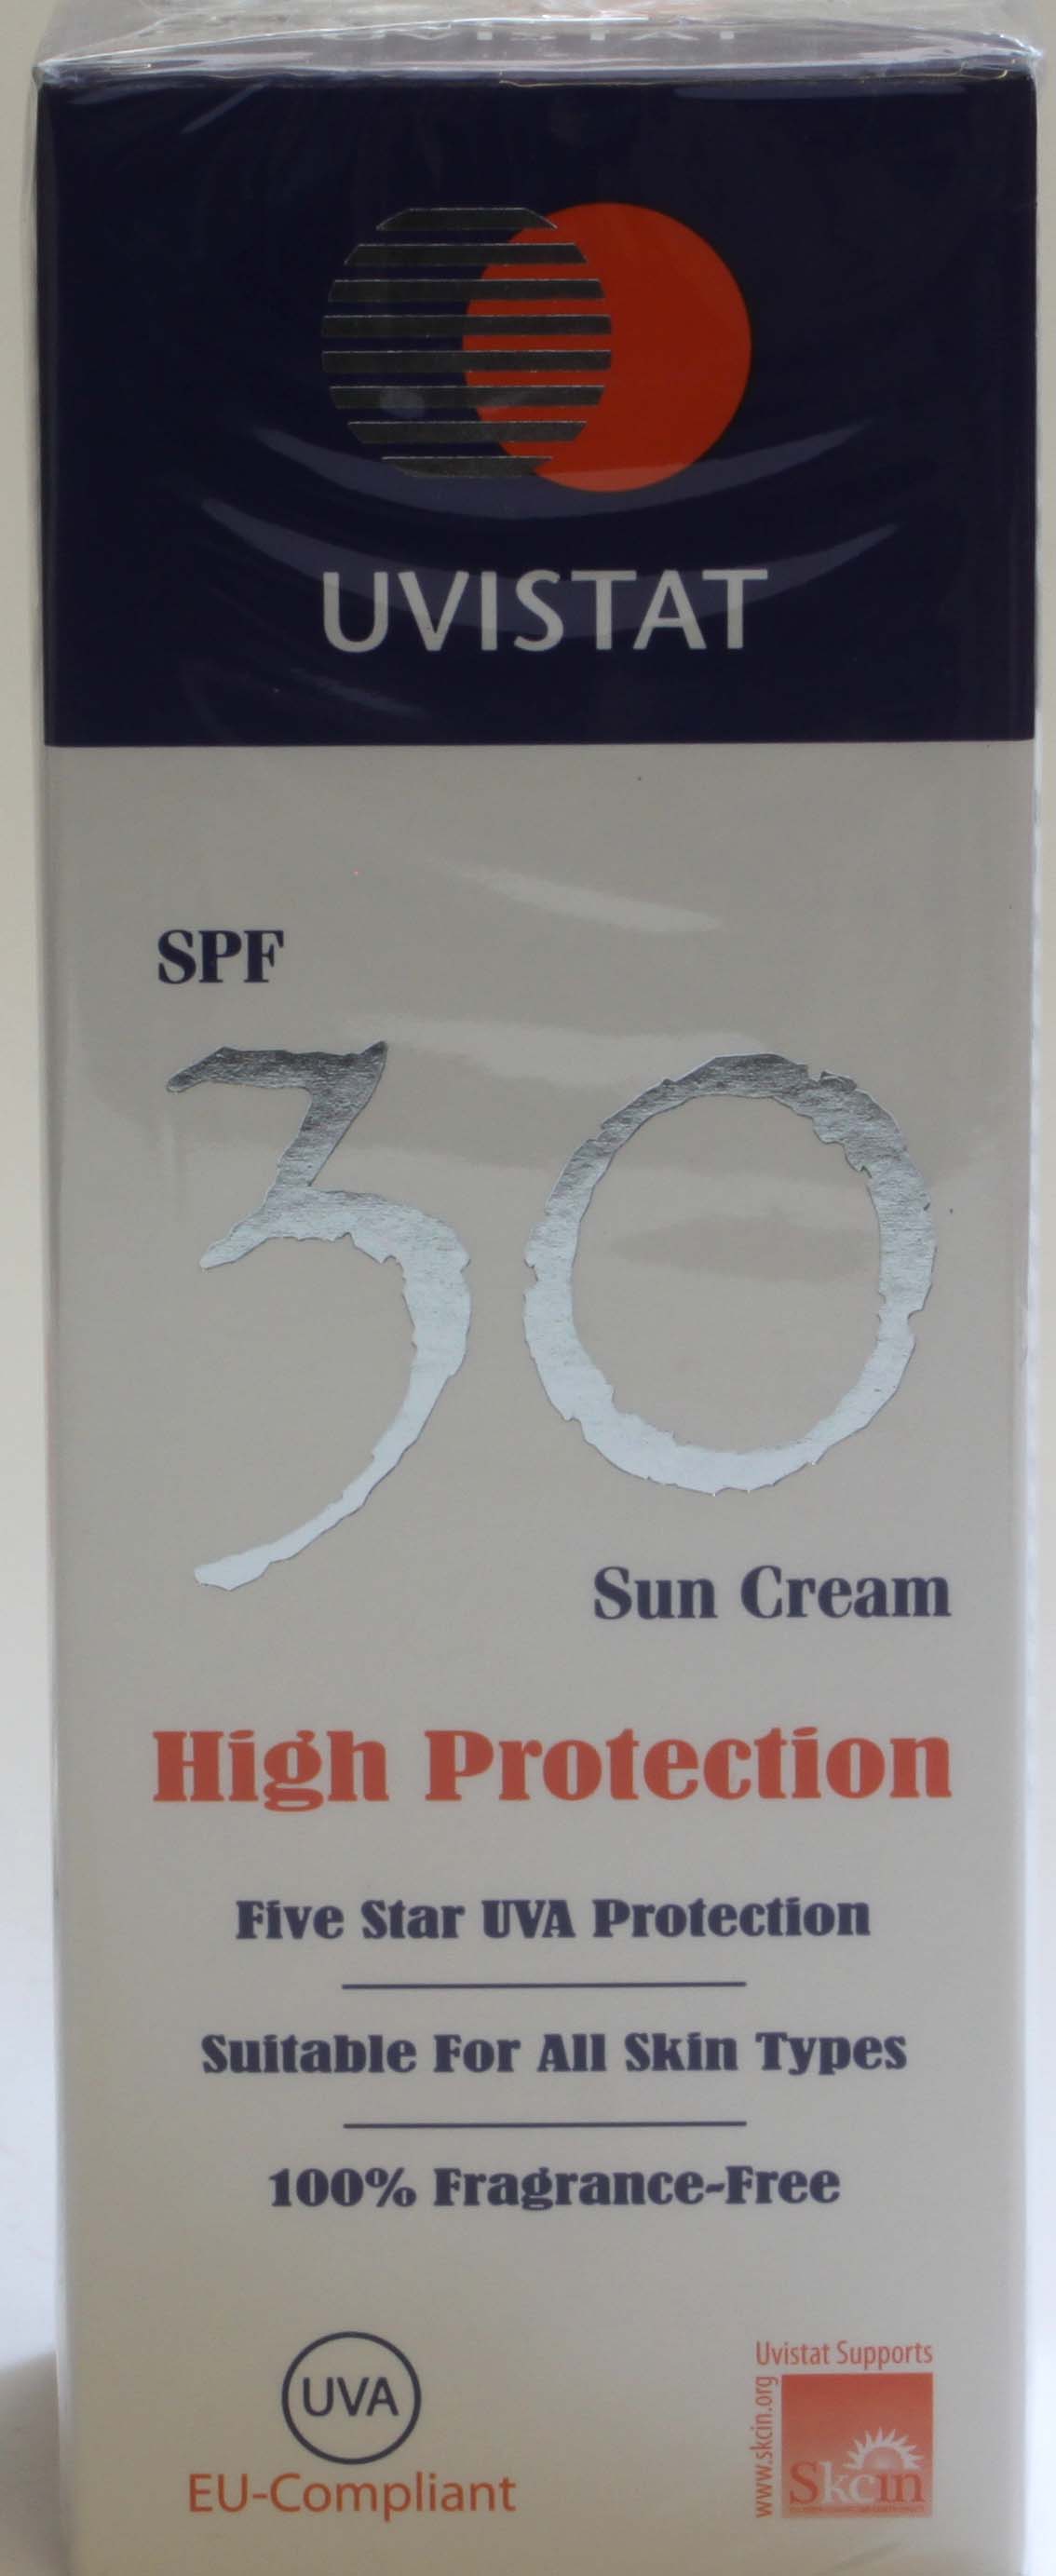 Uvistat SPF 30 Sun Cream - 125ml